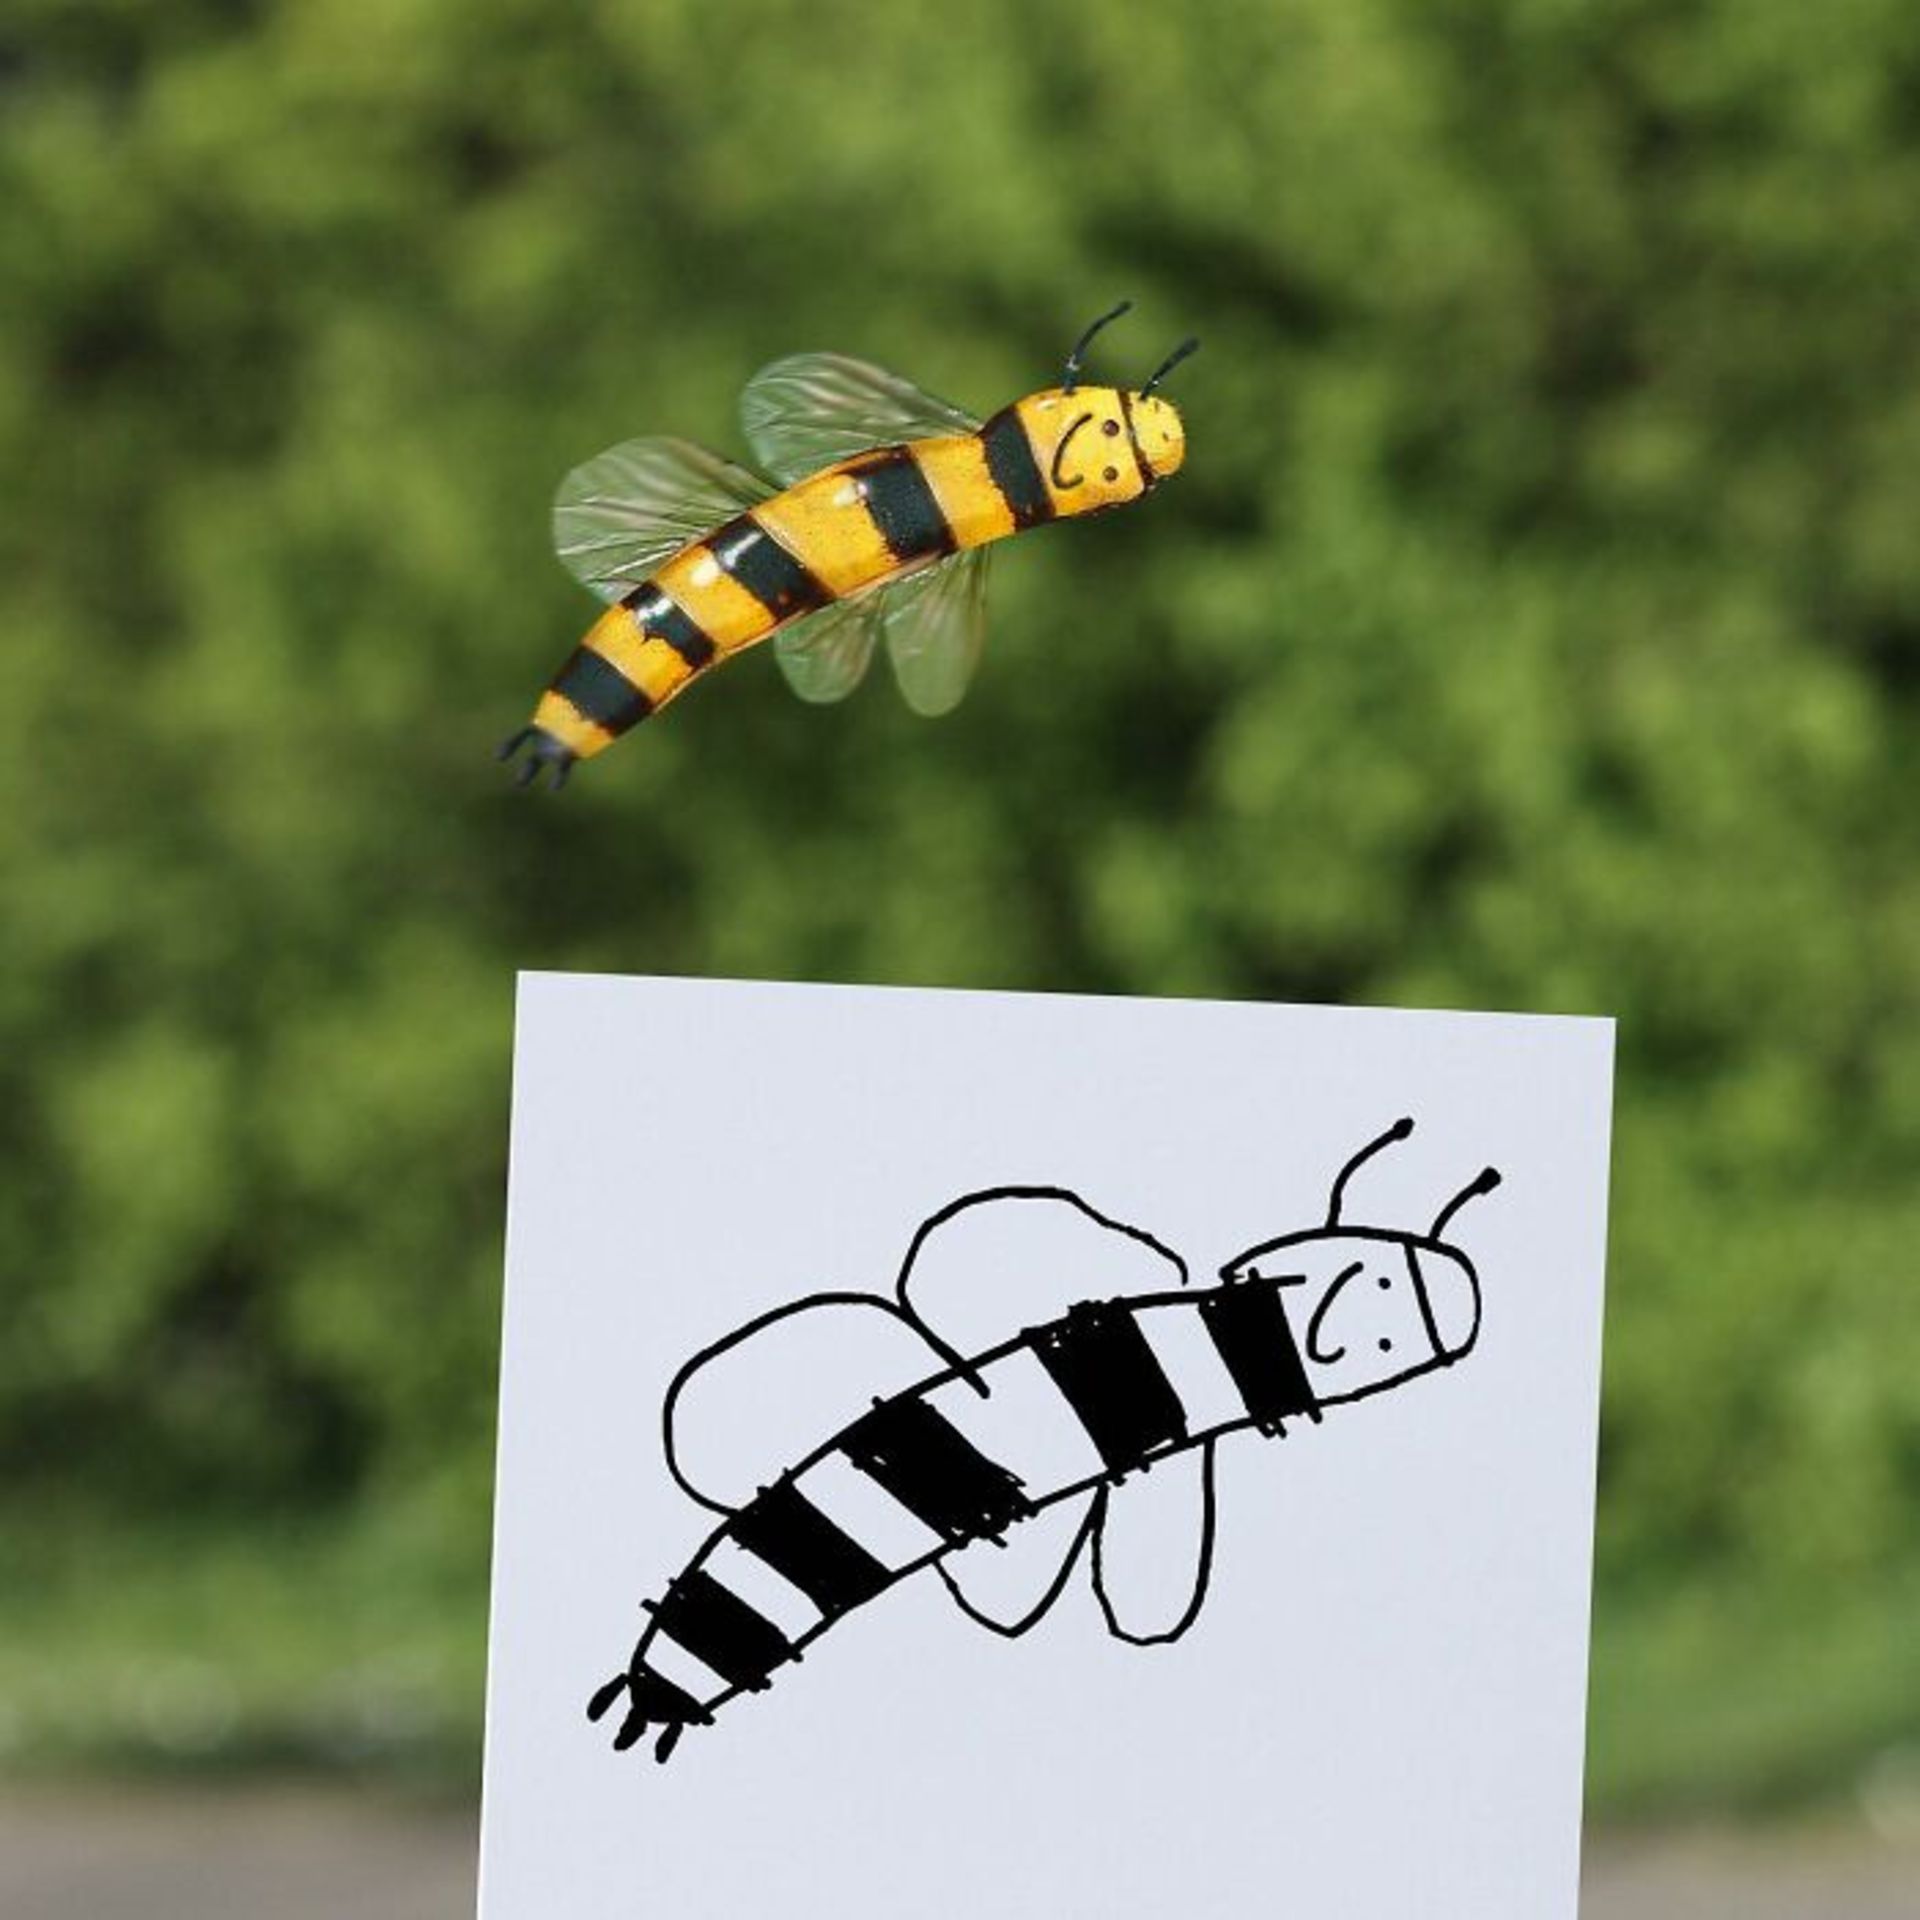 زنده کردن نقاشی کودکان با فتوشاپ - زنبور